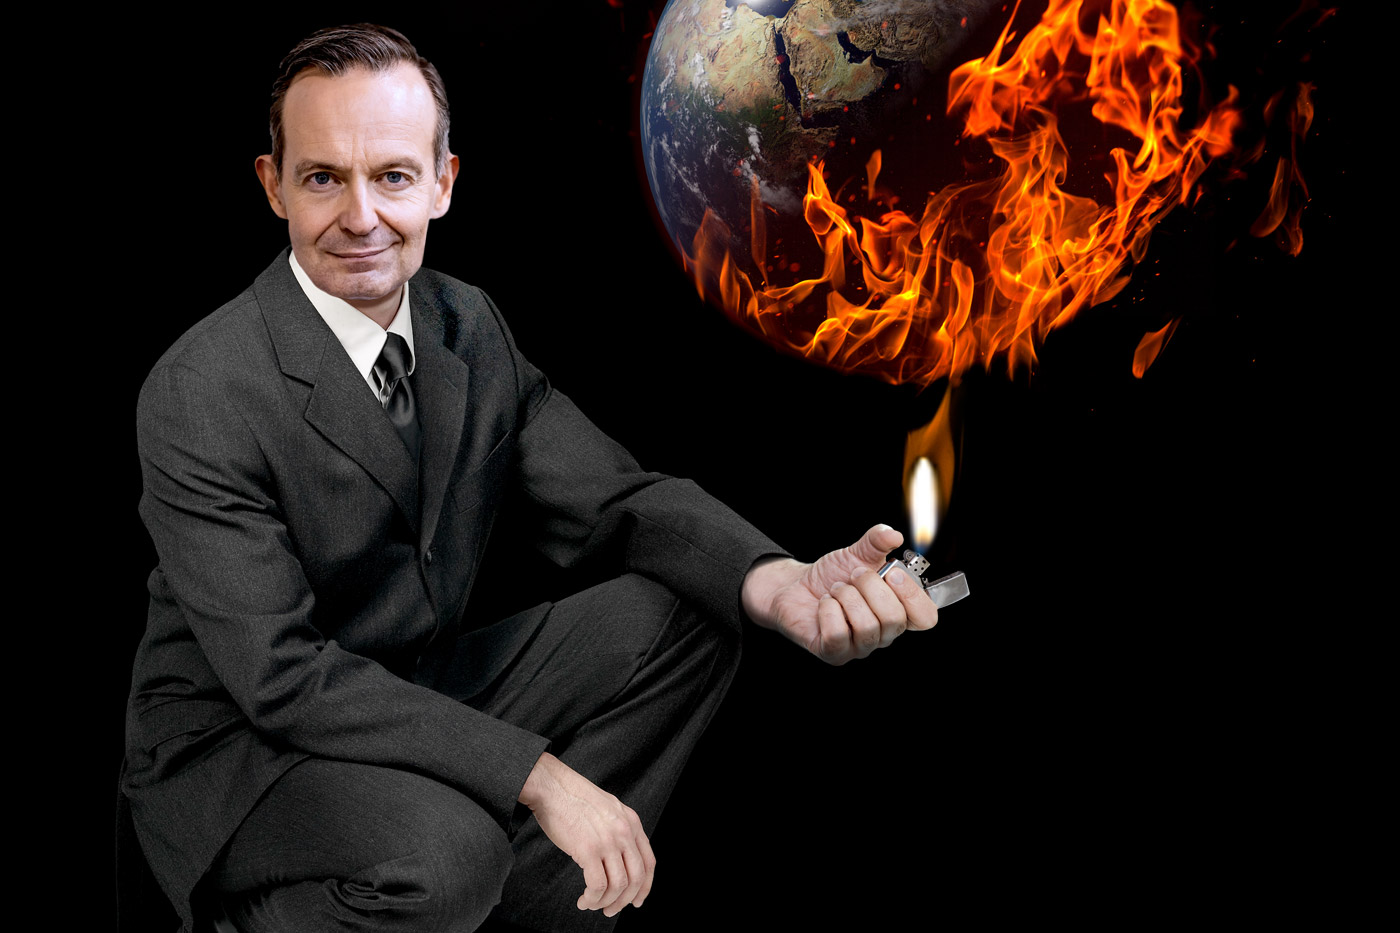 Fotocollage von Verkehrsminister Volker Wissing der mit einem Feuerzeug die Erde anzündet. Titelbild zum Campact-Appell: Wissings Klima-Blockade brechen!